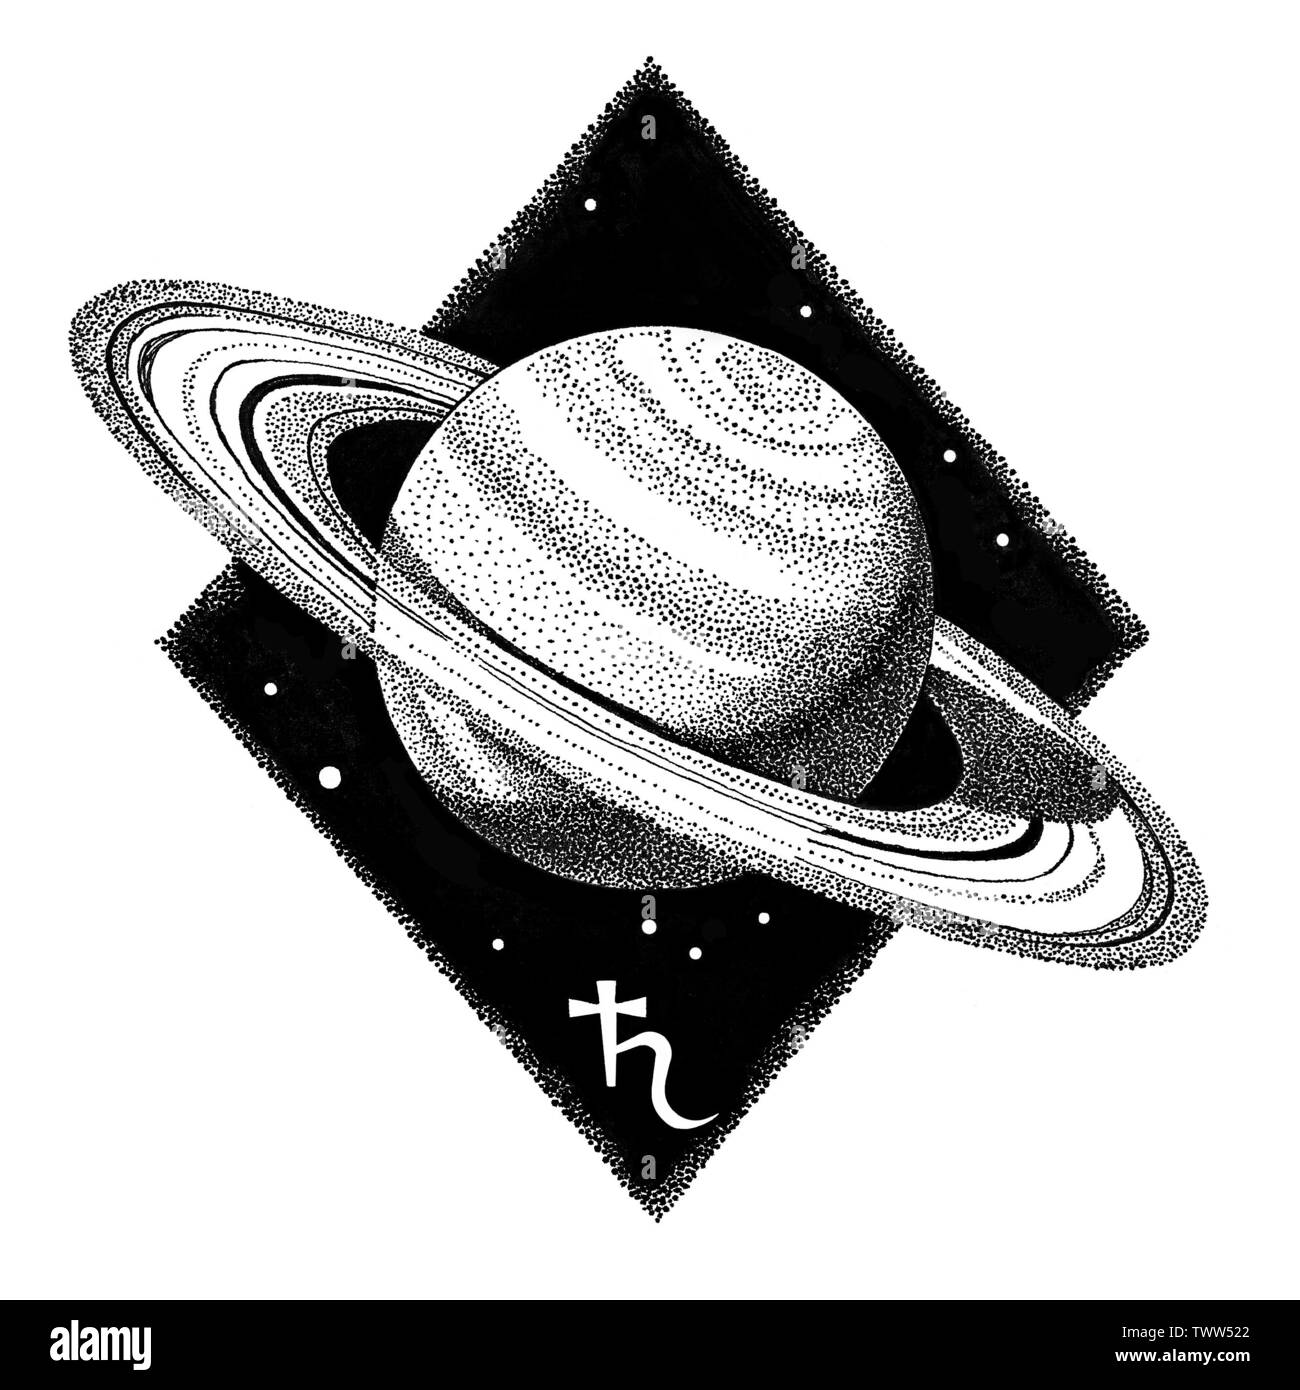 Planète Saturne. Stylo encre dessinés à la main, l'illustration dans le style dotwork. Concept de l'espace, l'astrologie, l'astronomie, d'impression sur t-shirt design logo cosmique. R astrologique Banque D'Images